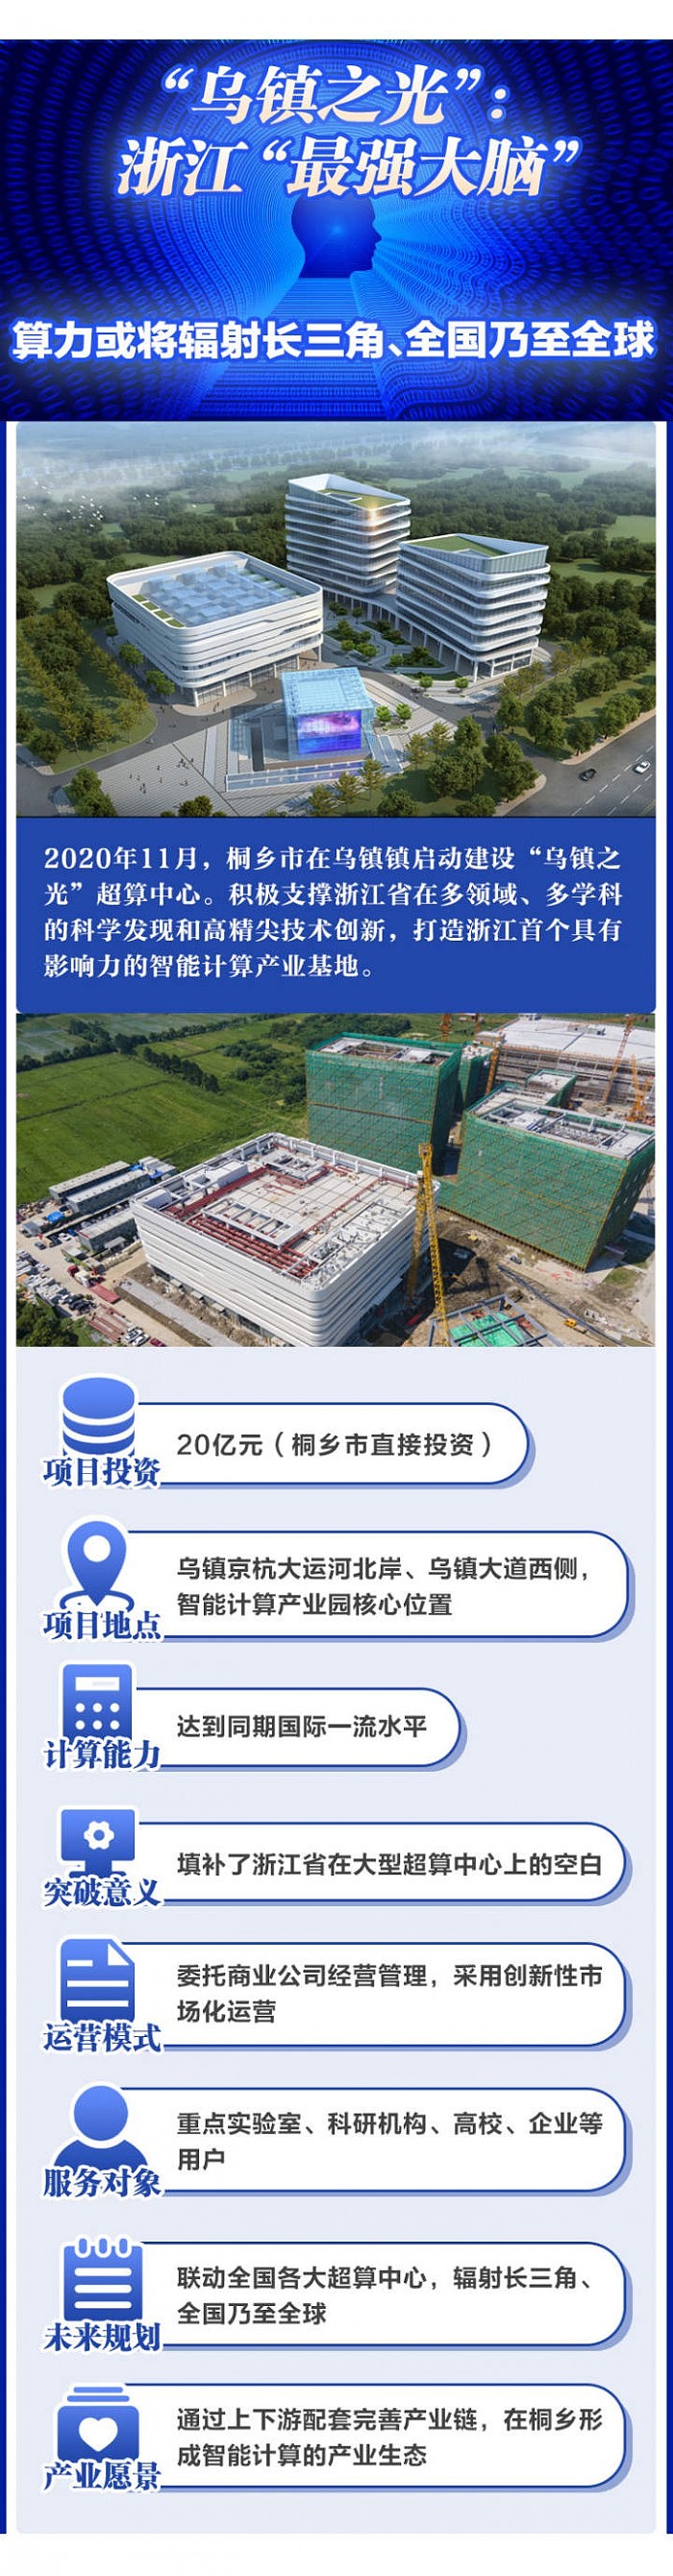 浙江省首个大型超算中心本月建成投用 - 2